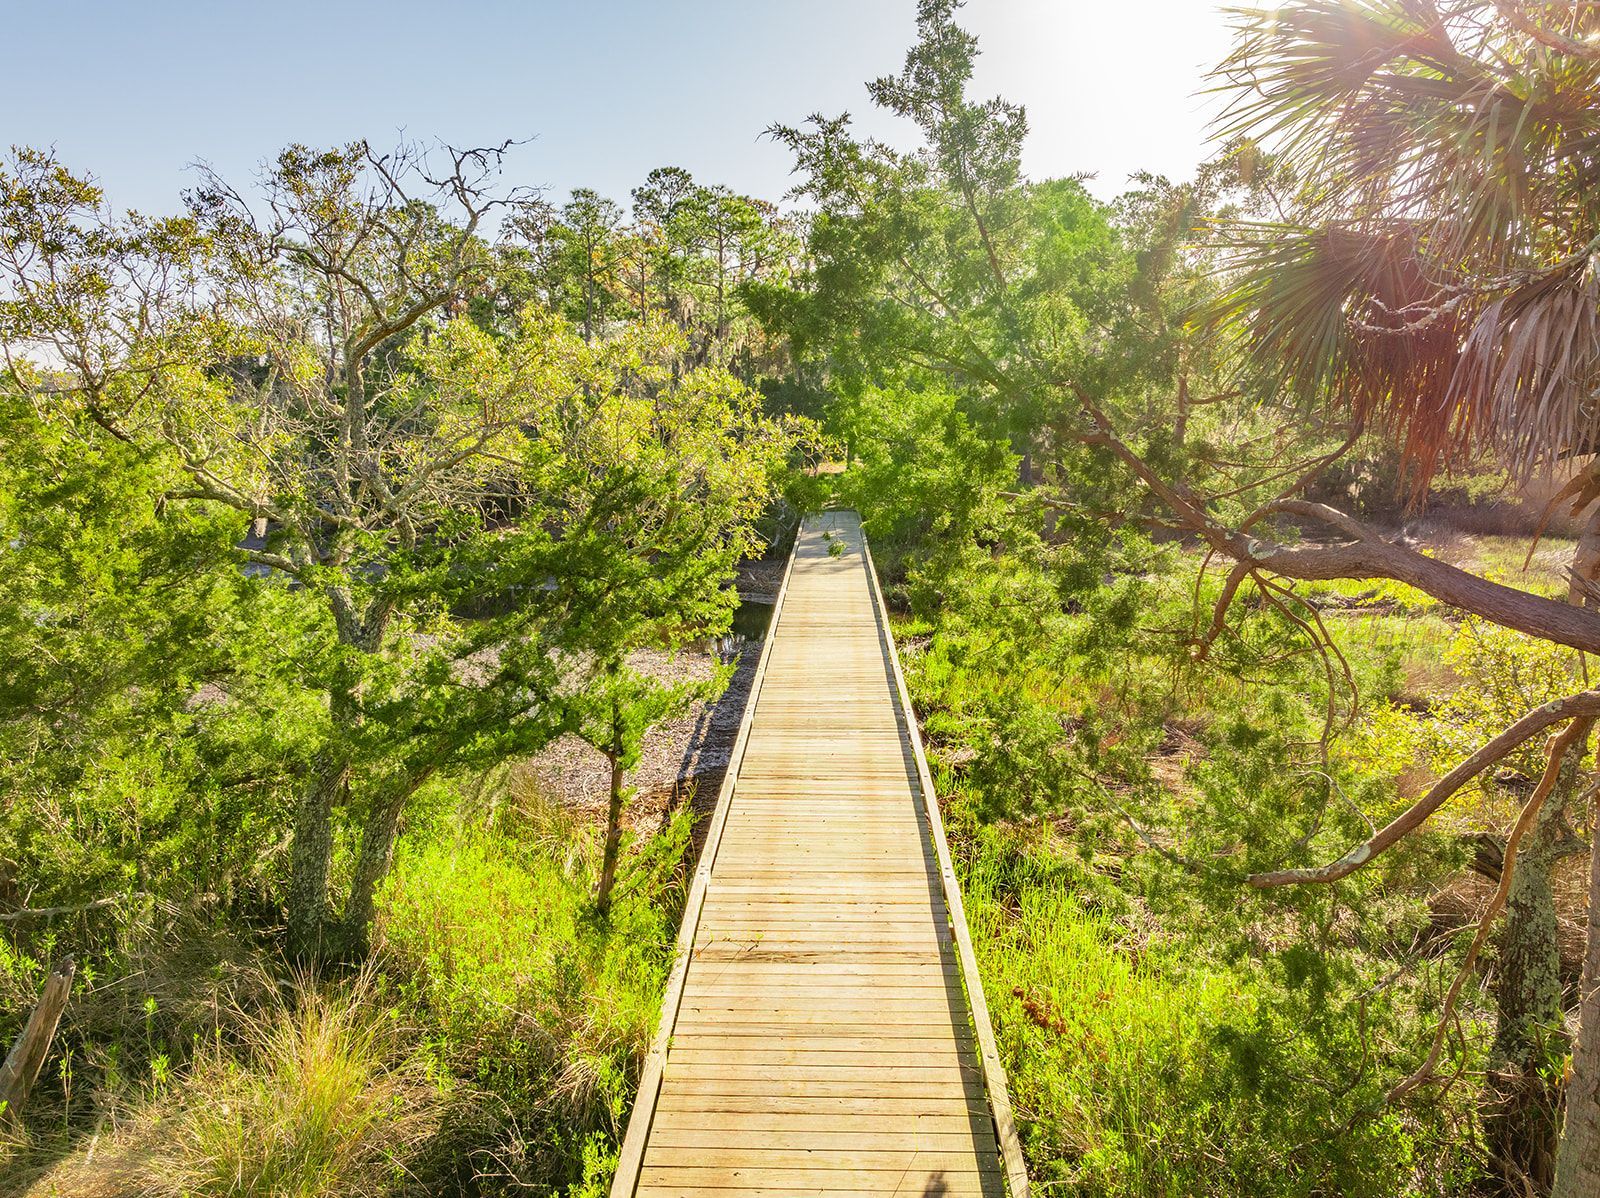 A wooden bridge going through a lush green forest.